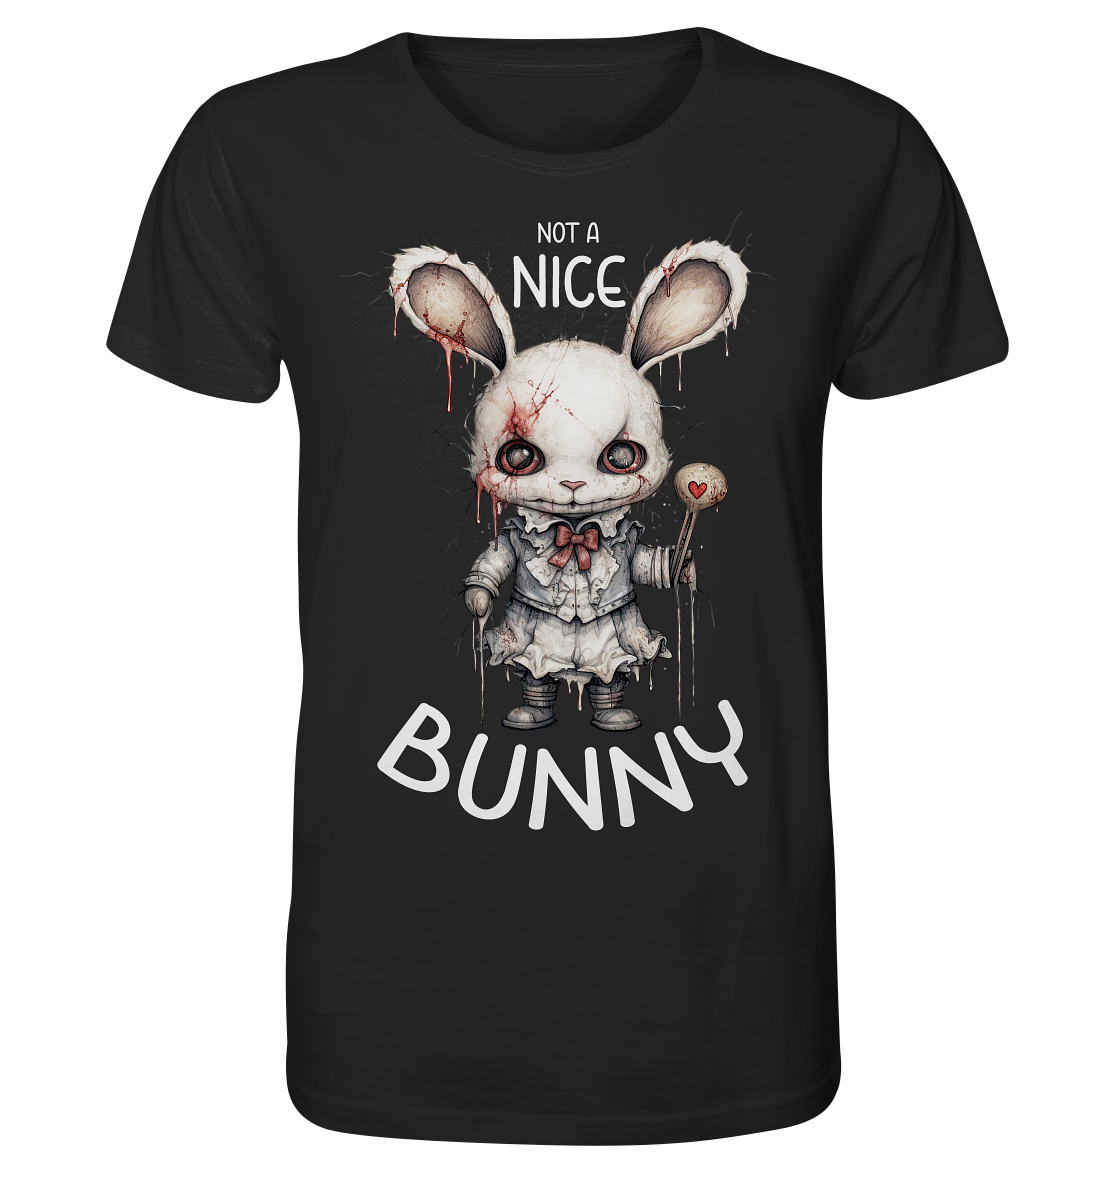 Not a nice Bunny - Organic Shirt